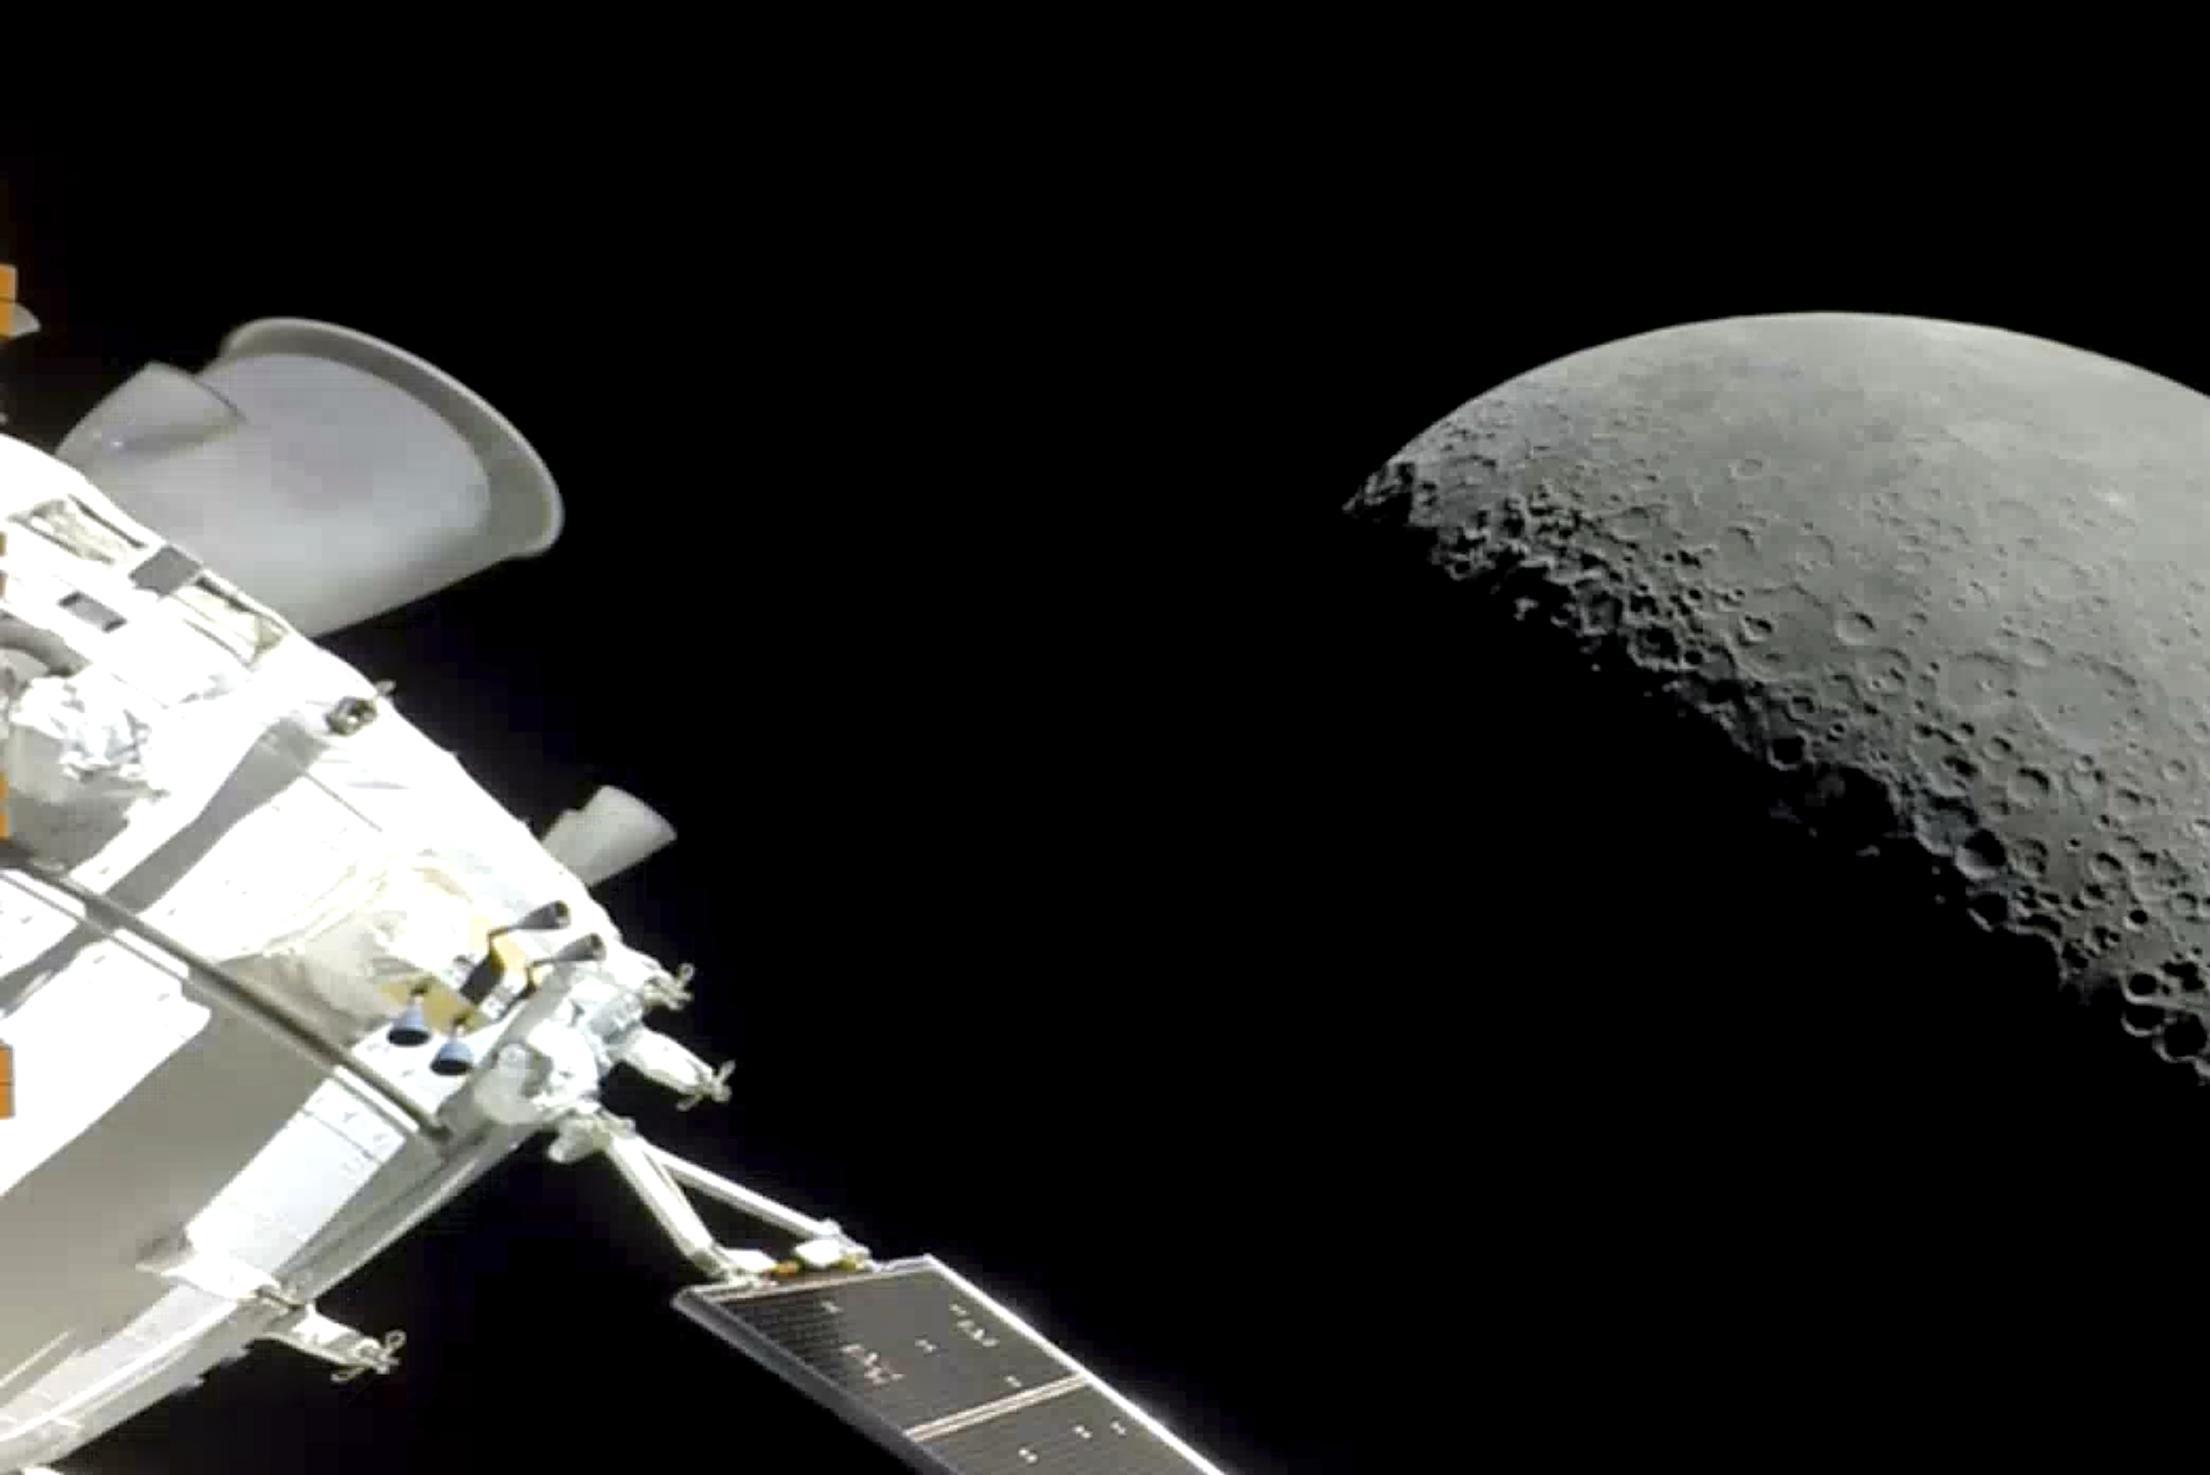 «Орион» вернулся на Землю после испытательного полета, а новый космический корабль уже отправляется: успешно запущена первая частная лунная миссия